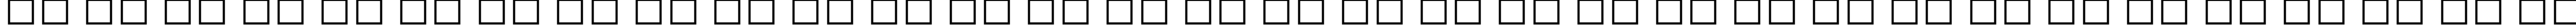 Пример написания русского алфавита шрифтом Gill Sans MT Bold